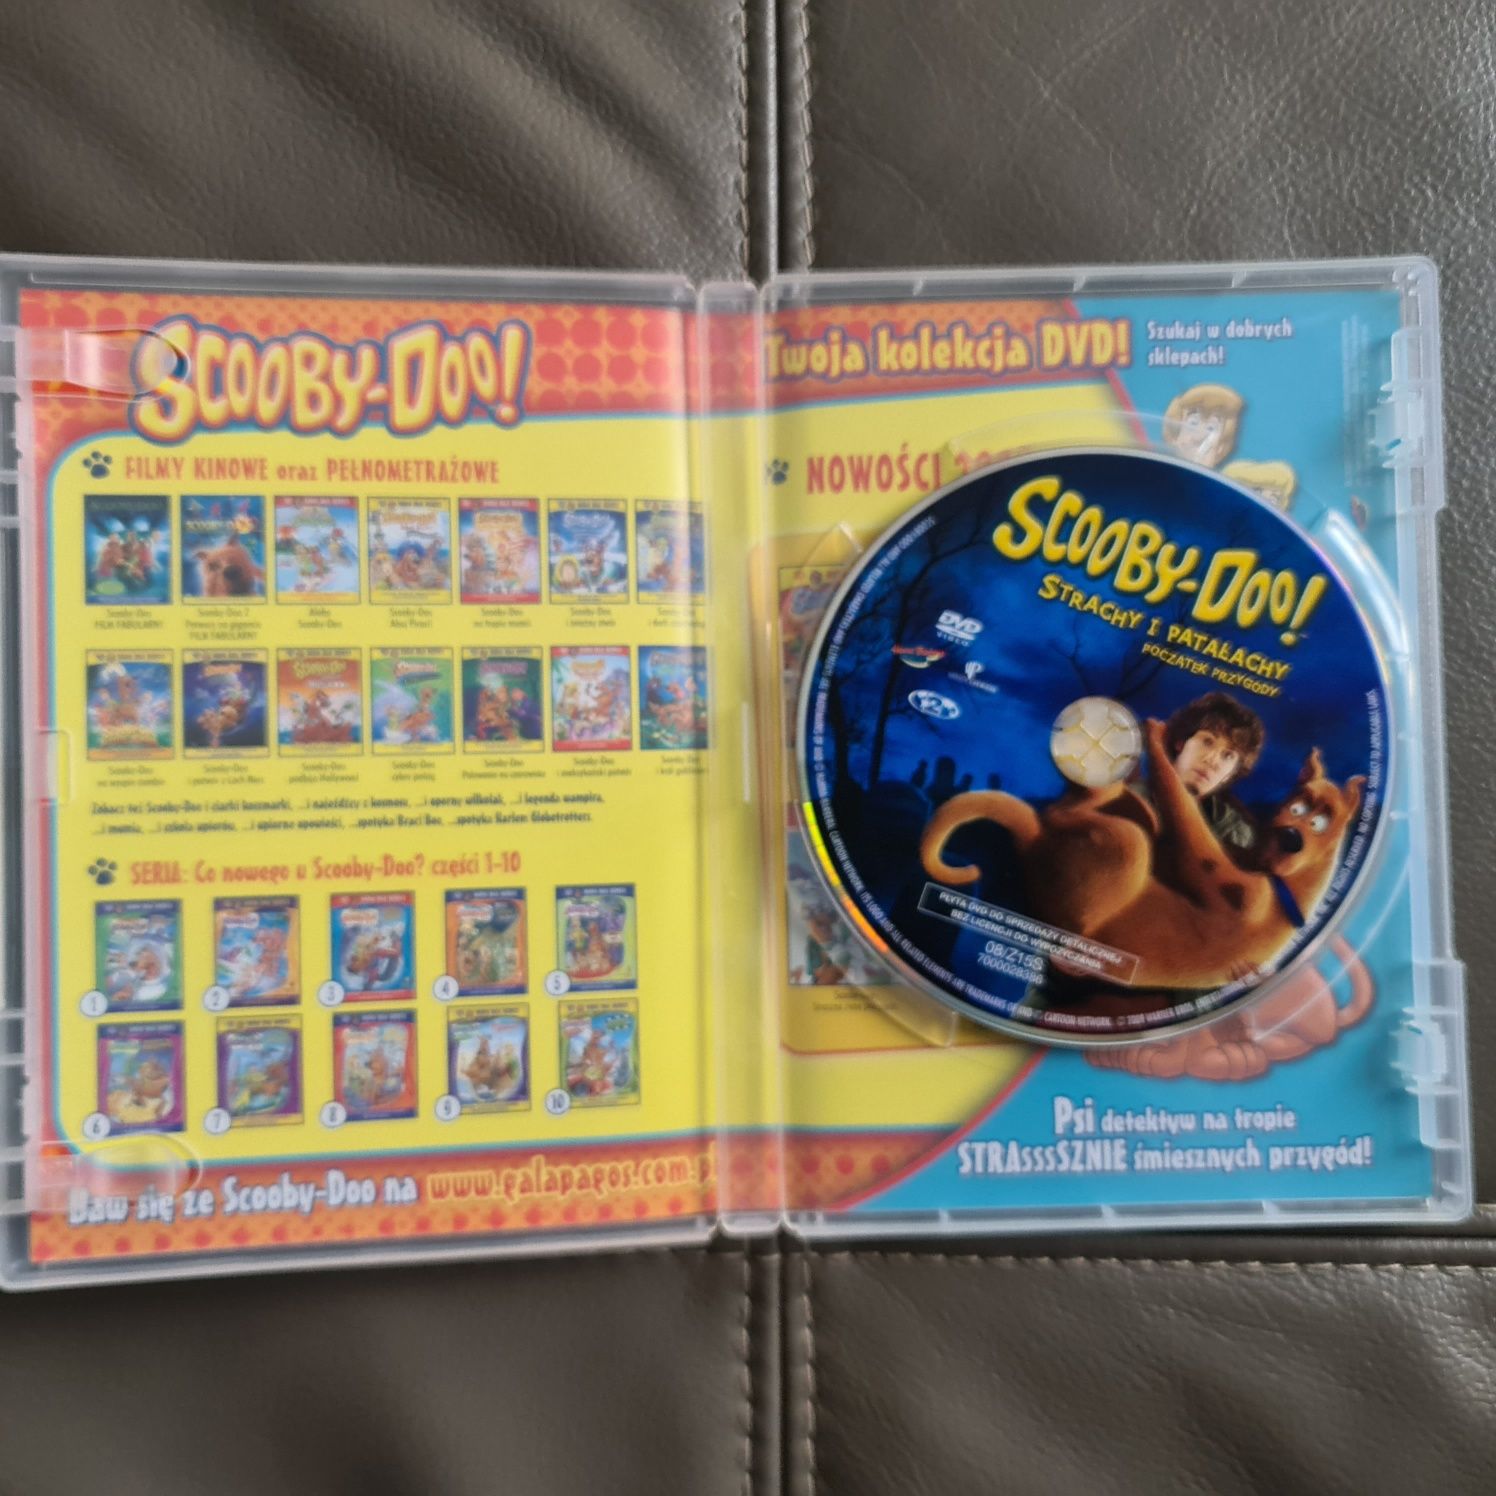 Scooby-Doo! DVD - NOWE